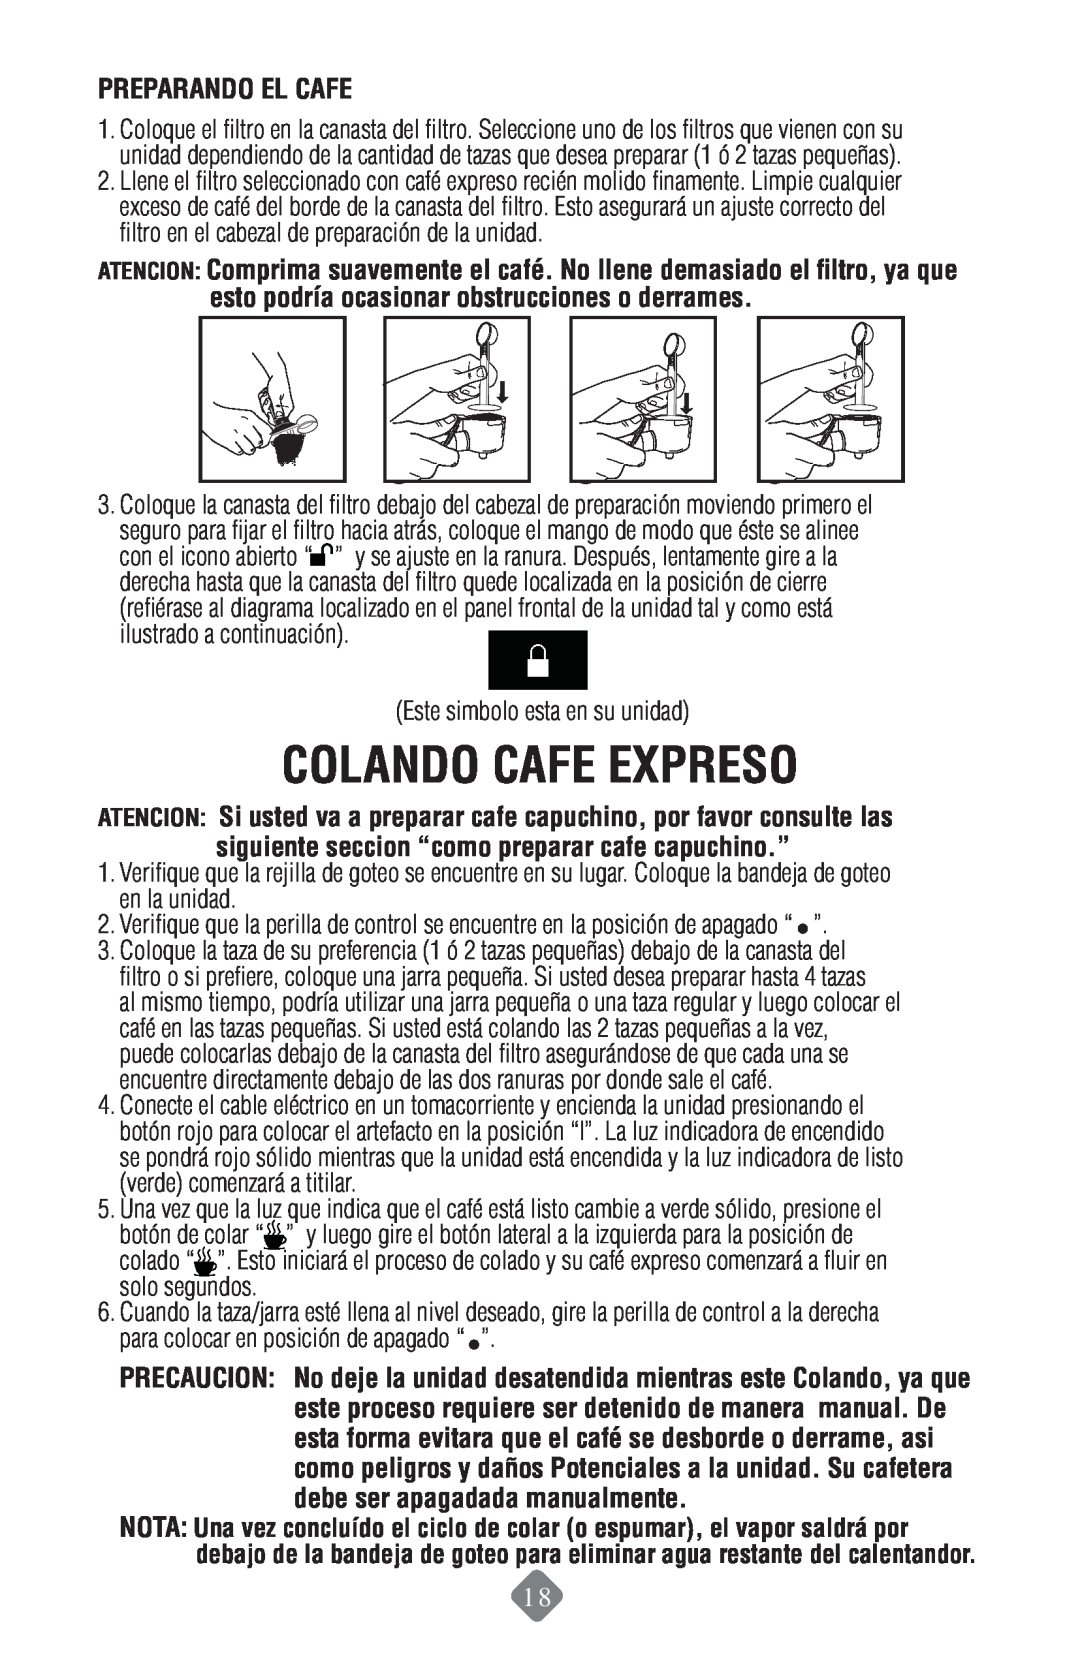 Mr. Coffee ECMP50 instruction manual Colando Cafe Expreso, Preparando El Cafe 